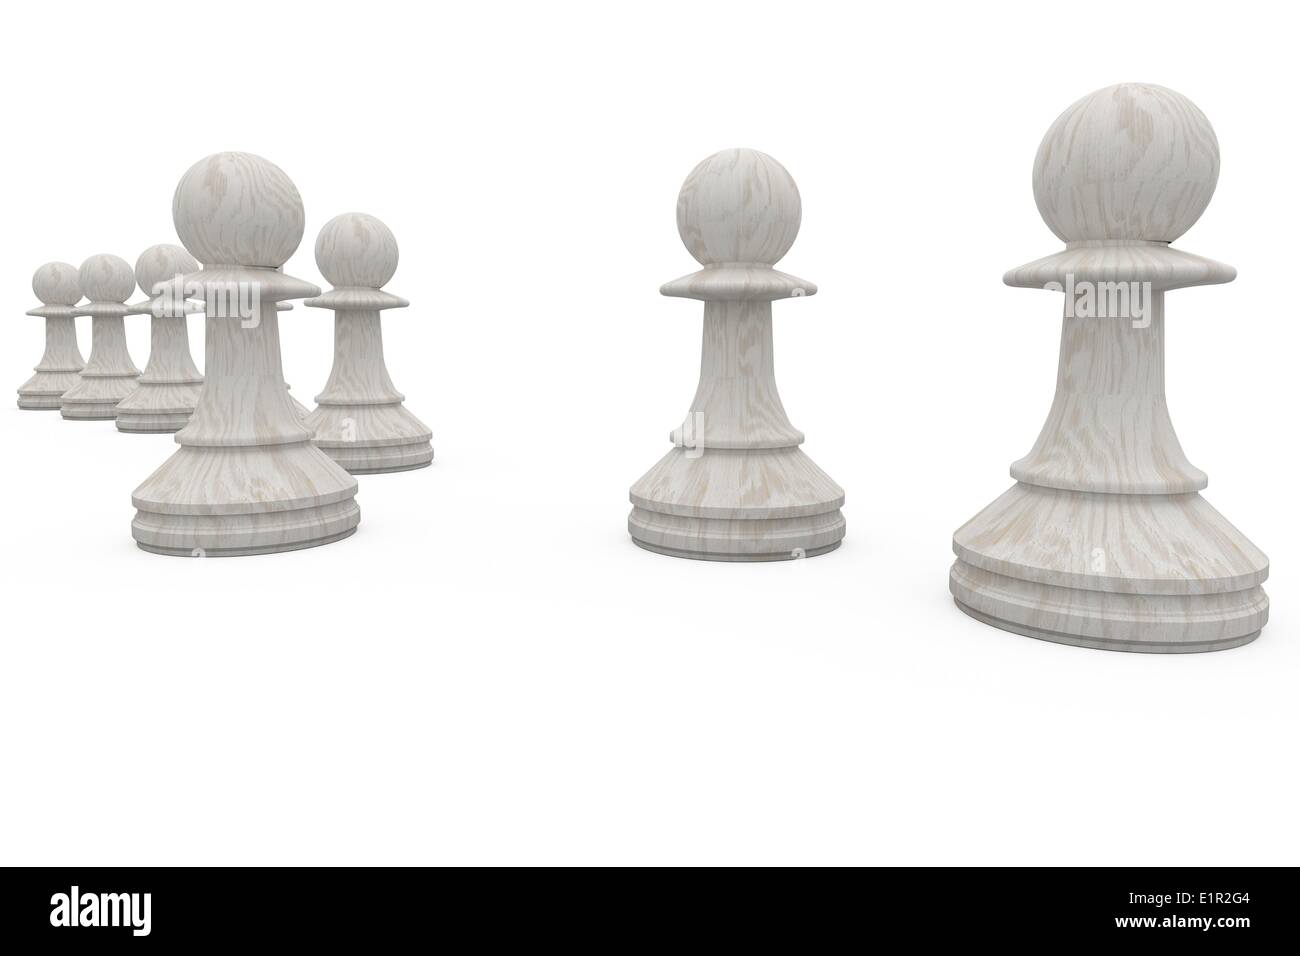 Los peones de ajedrez blanco juntos Foto de stock